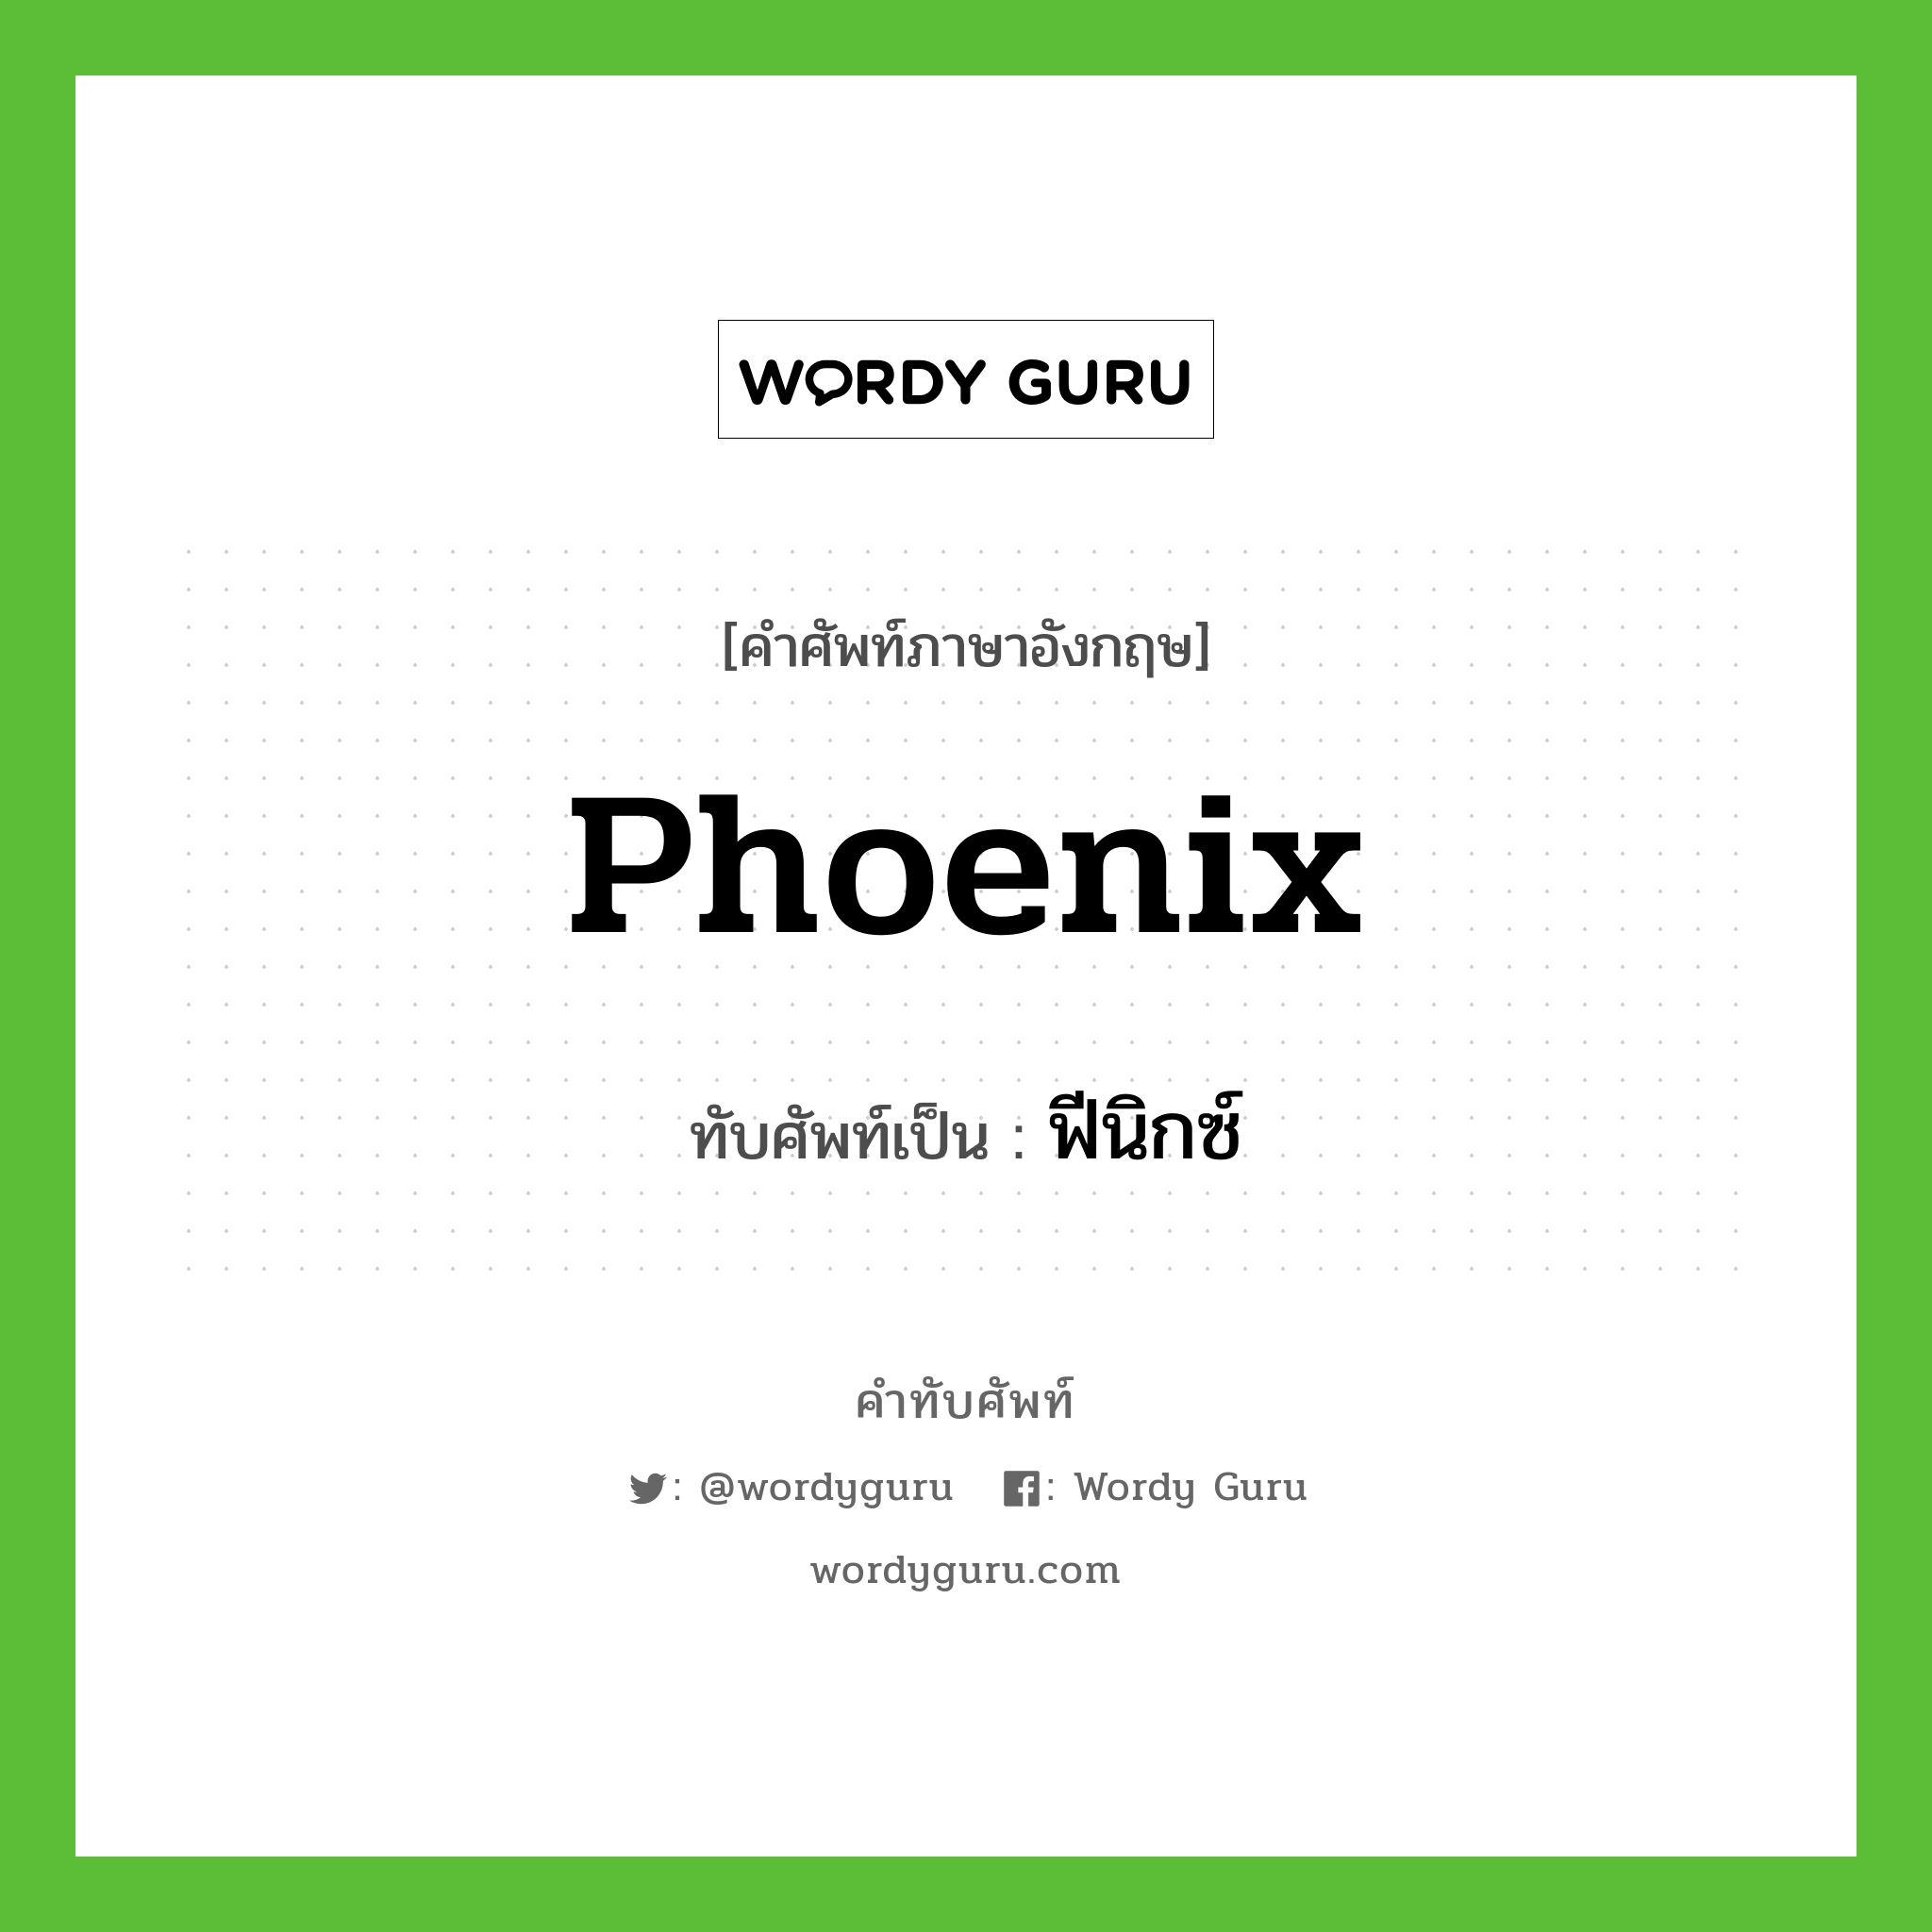 Phoenix เขียนเป็นคำไทยว่าอะไร?, คำศัพท์ภาษาอังกฤษ Phoenix ทับศัพท์เป็น ฟีนิกซ์